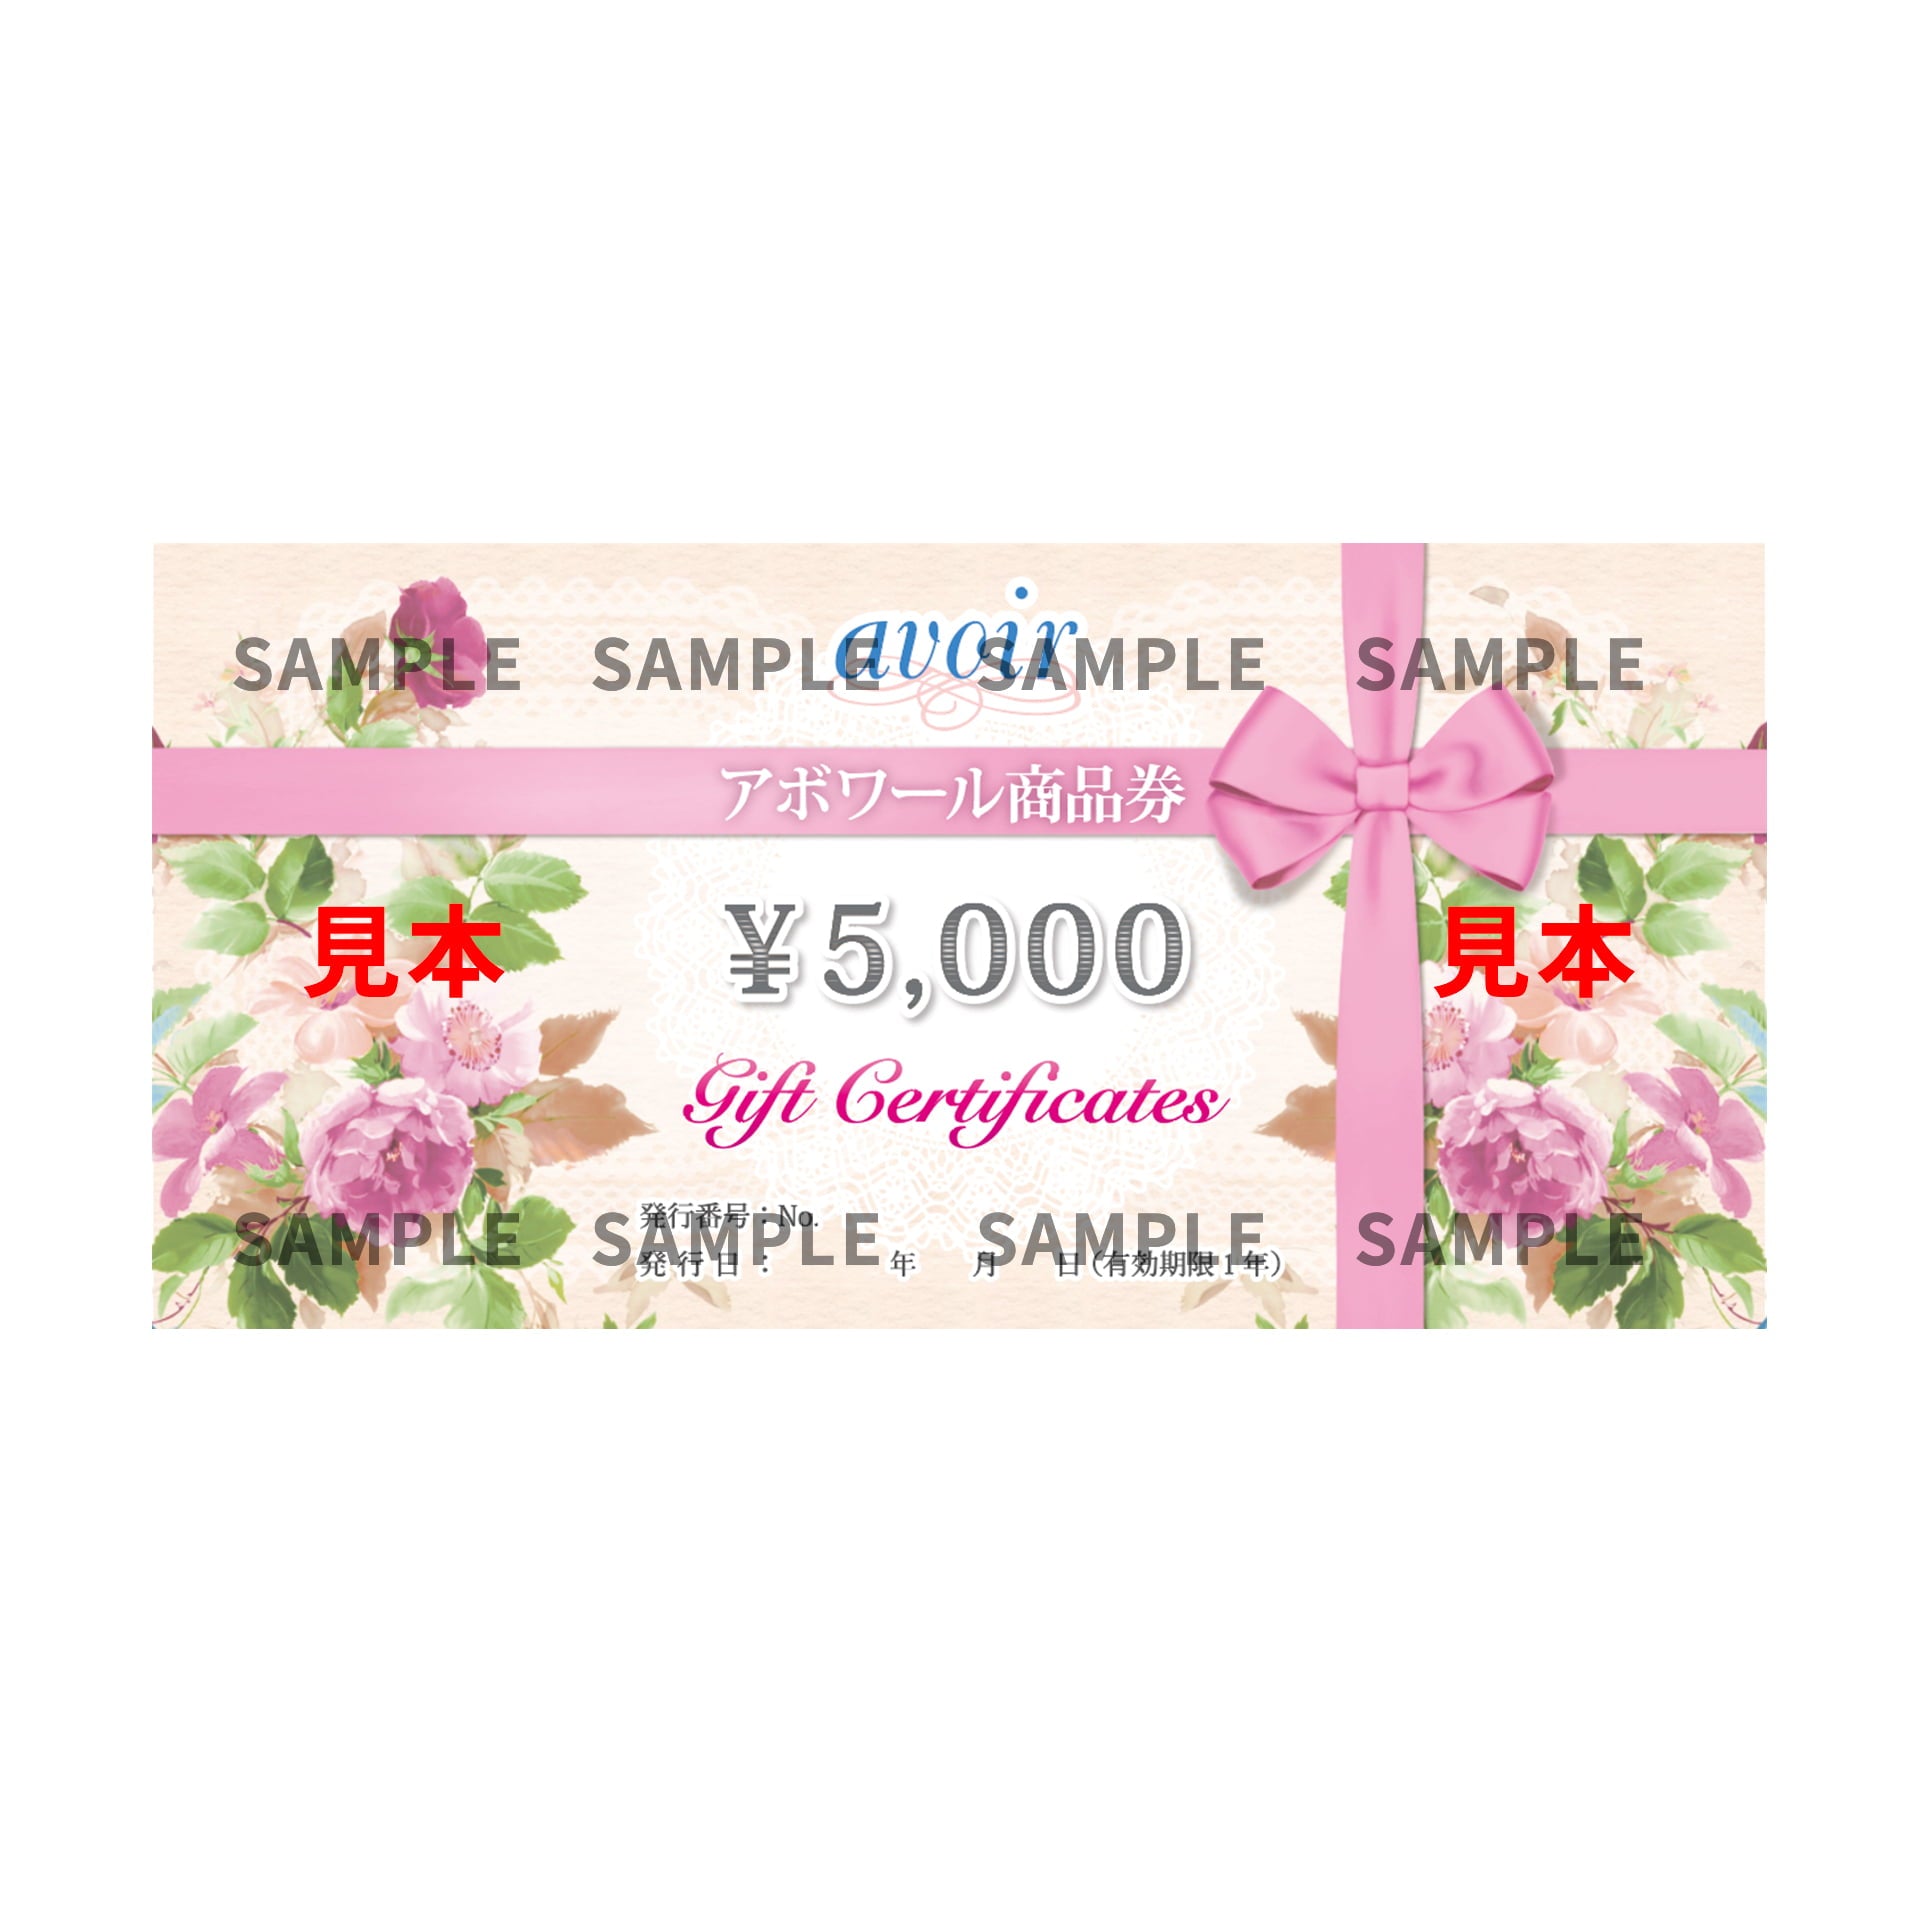 アボワール 5,000円商品券